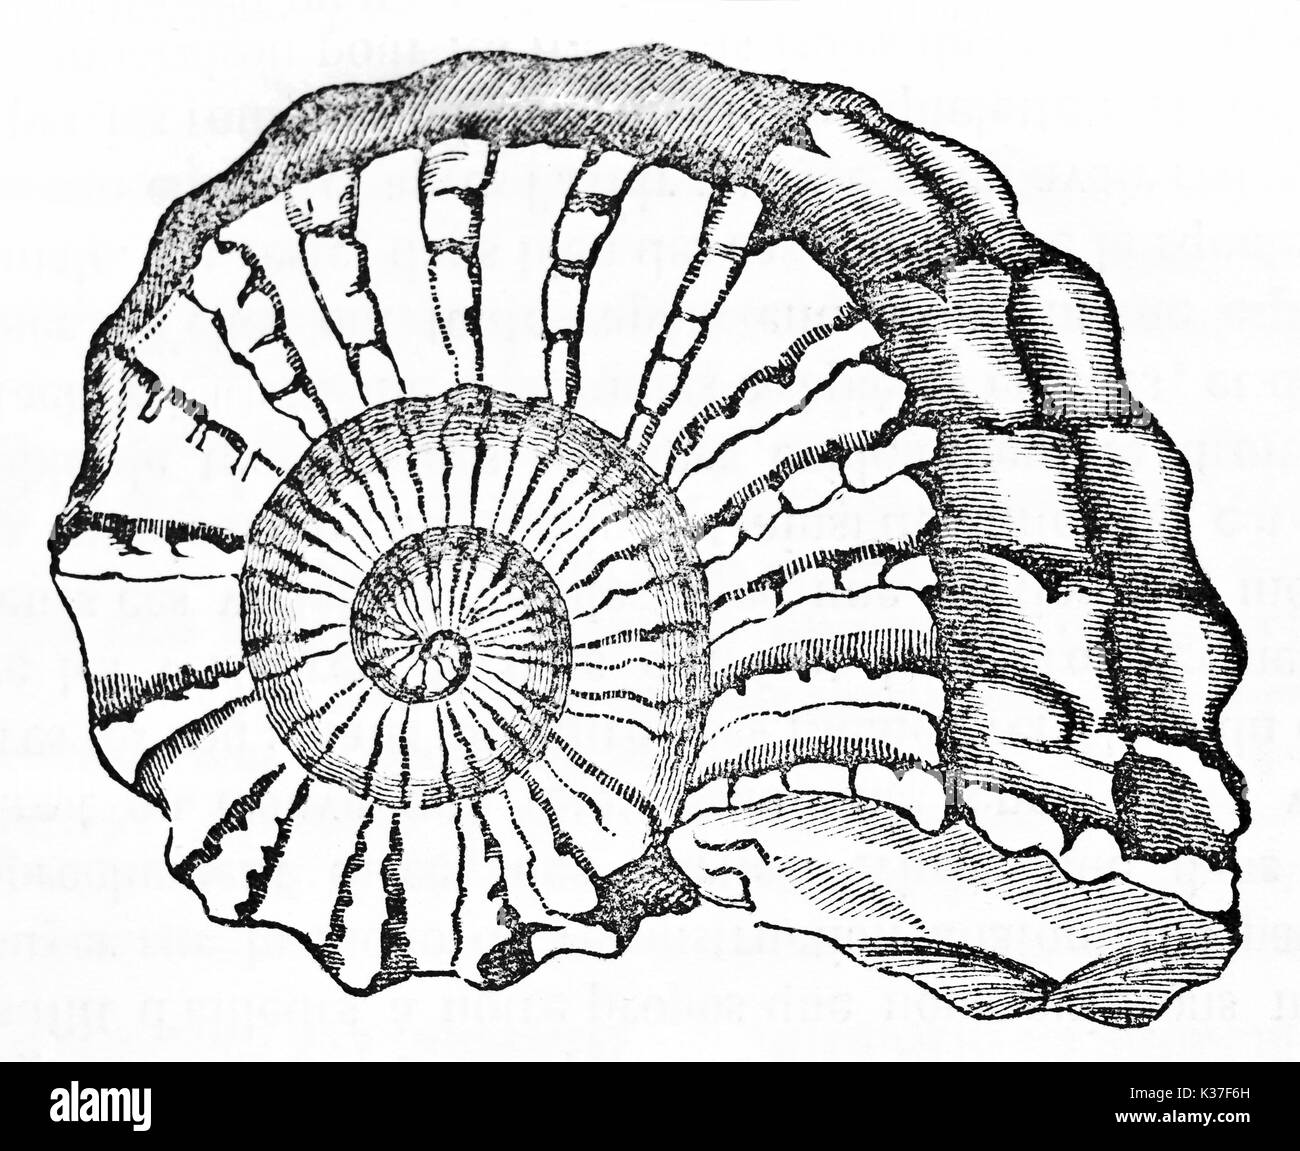 Fossiles ammonite antique dépeint dans un style graphique minimale et isolés. Vieille Illustration d'auteur non identifié publié le magasin pittoresque Paris 1834 Banque D'Images